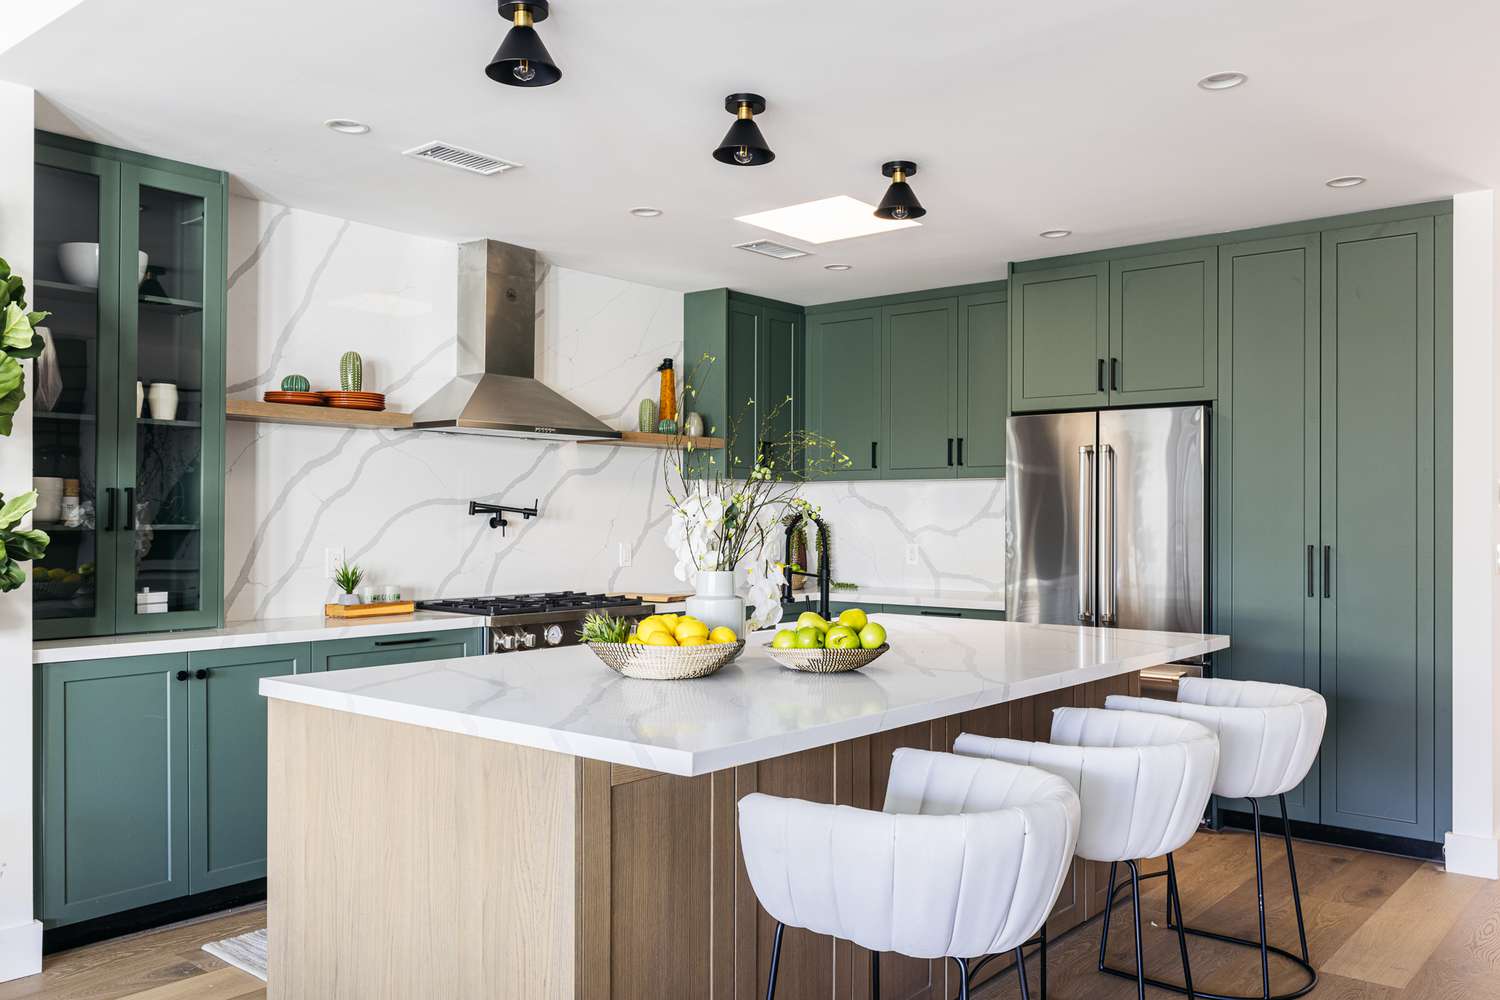 Ilha de cozinha com bancada de mármore cercada por armários verdes